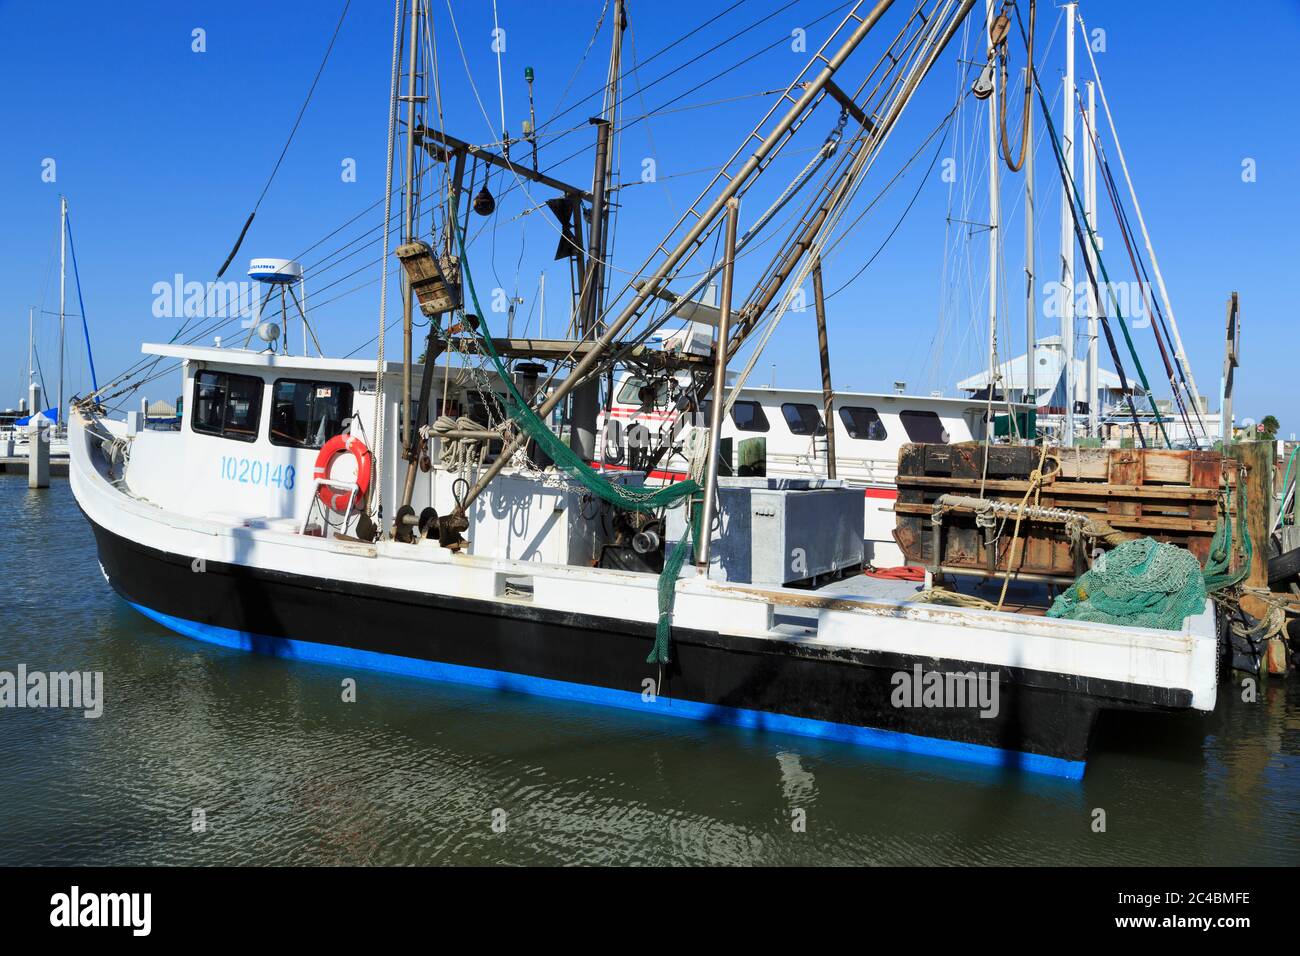 Shrimp boats in marina,Corpus Christi, Texas, USA Stock Photo